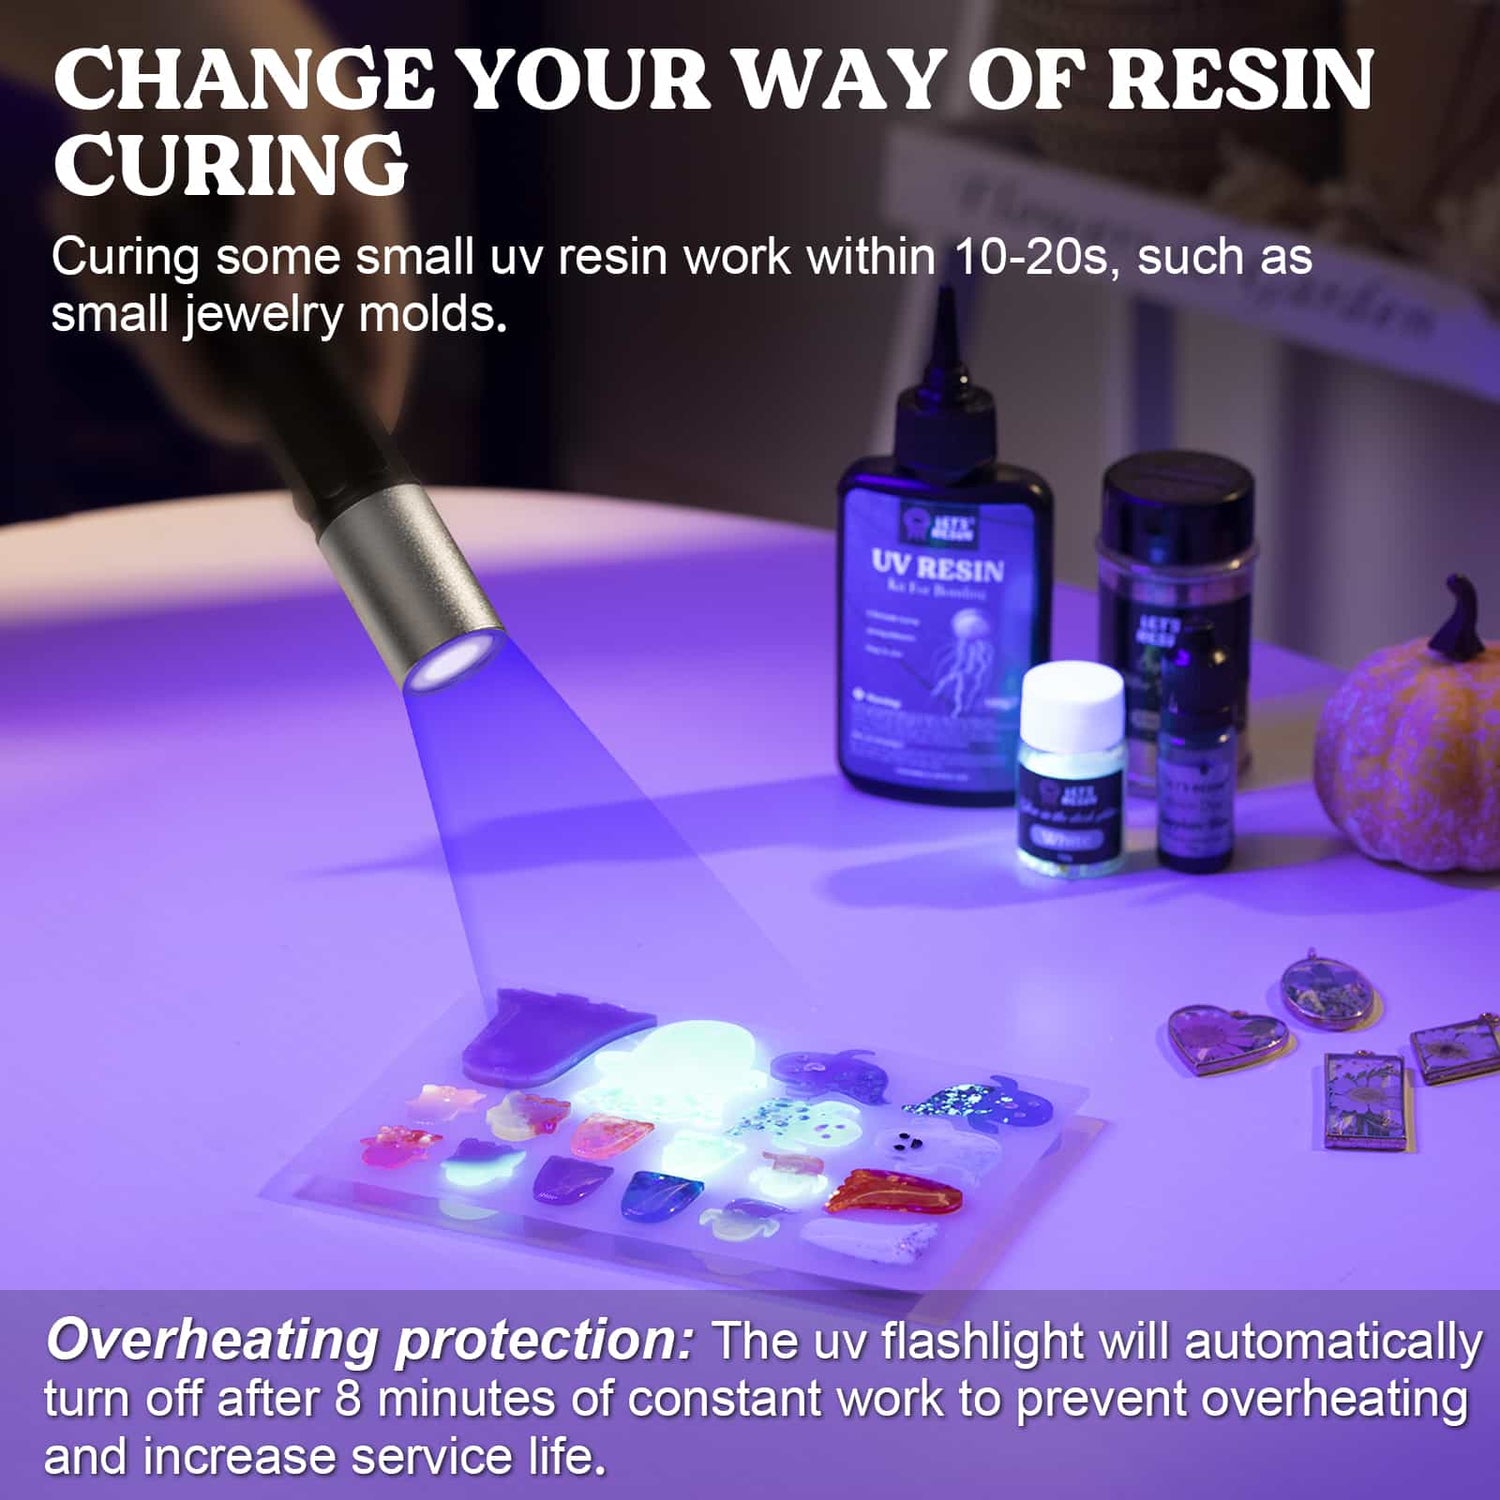 Let's Resin Round UV Resin Light Pro